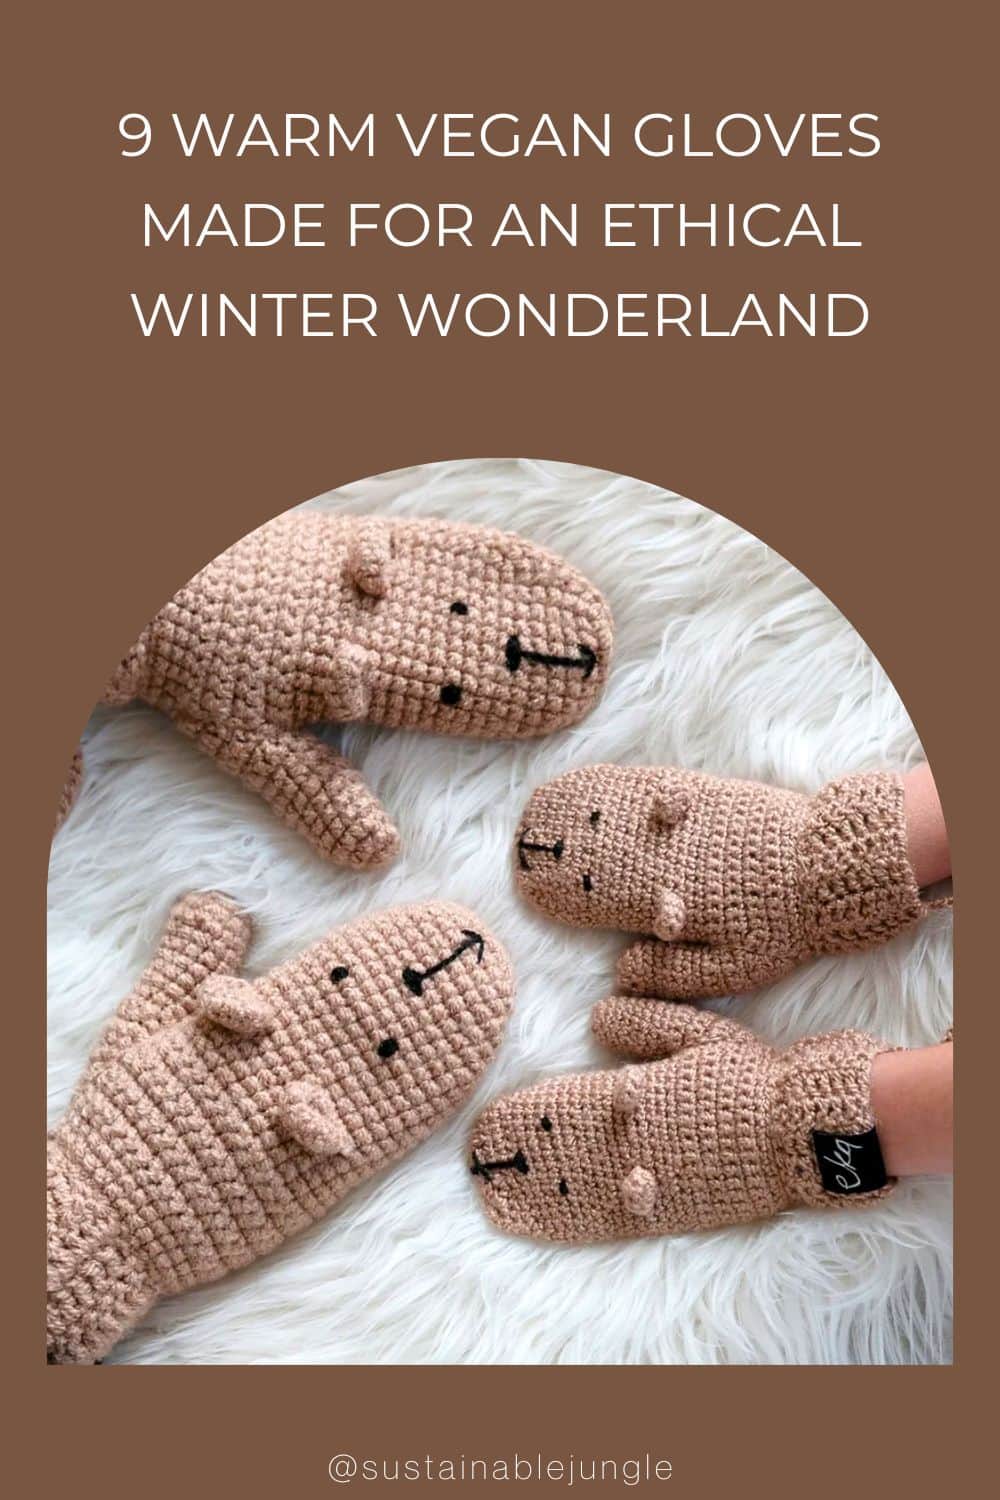 9 Warm Vegan Gloves Made For An Ethical Winter Wonderland Image by eka #vegangloves #veganwitnergloves #vegandrivingglvoes #warmvegangloves #veganmittens #bestvegangloves #sustainablejungle